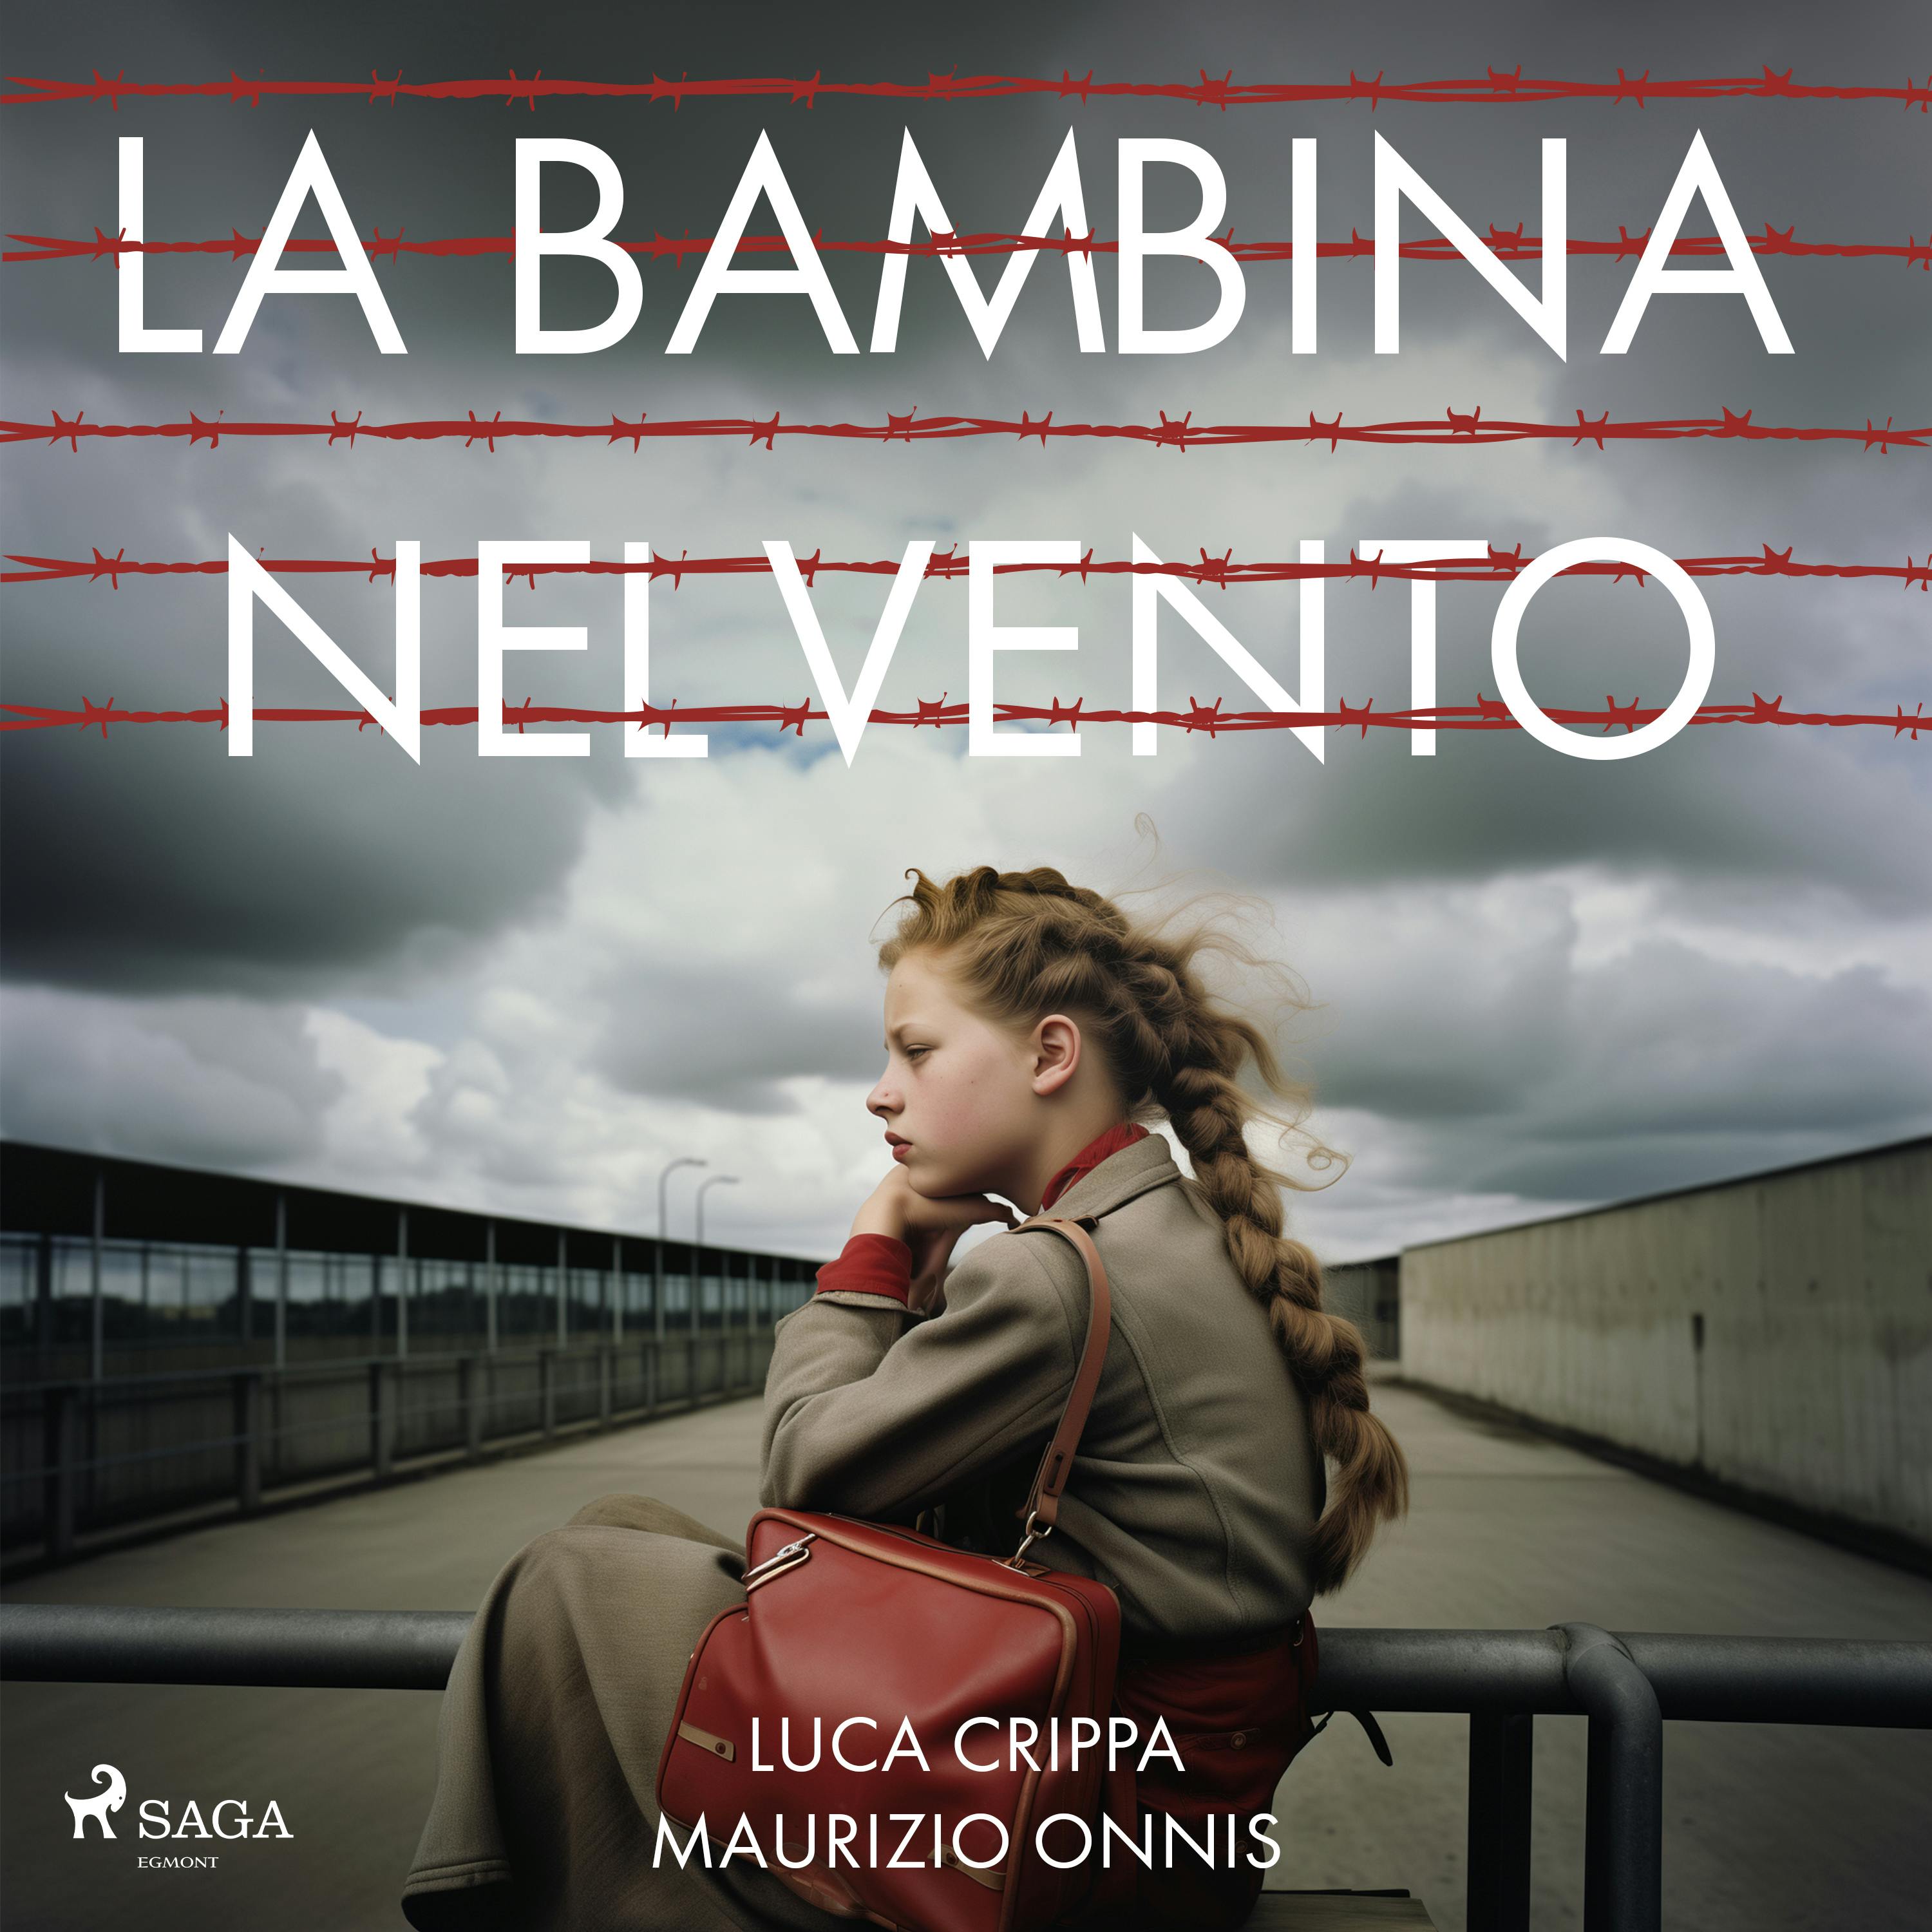 La bambina nel vento - Luca Crippa, Maurizio Onnis